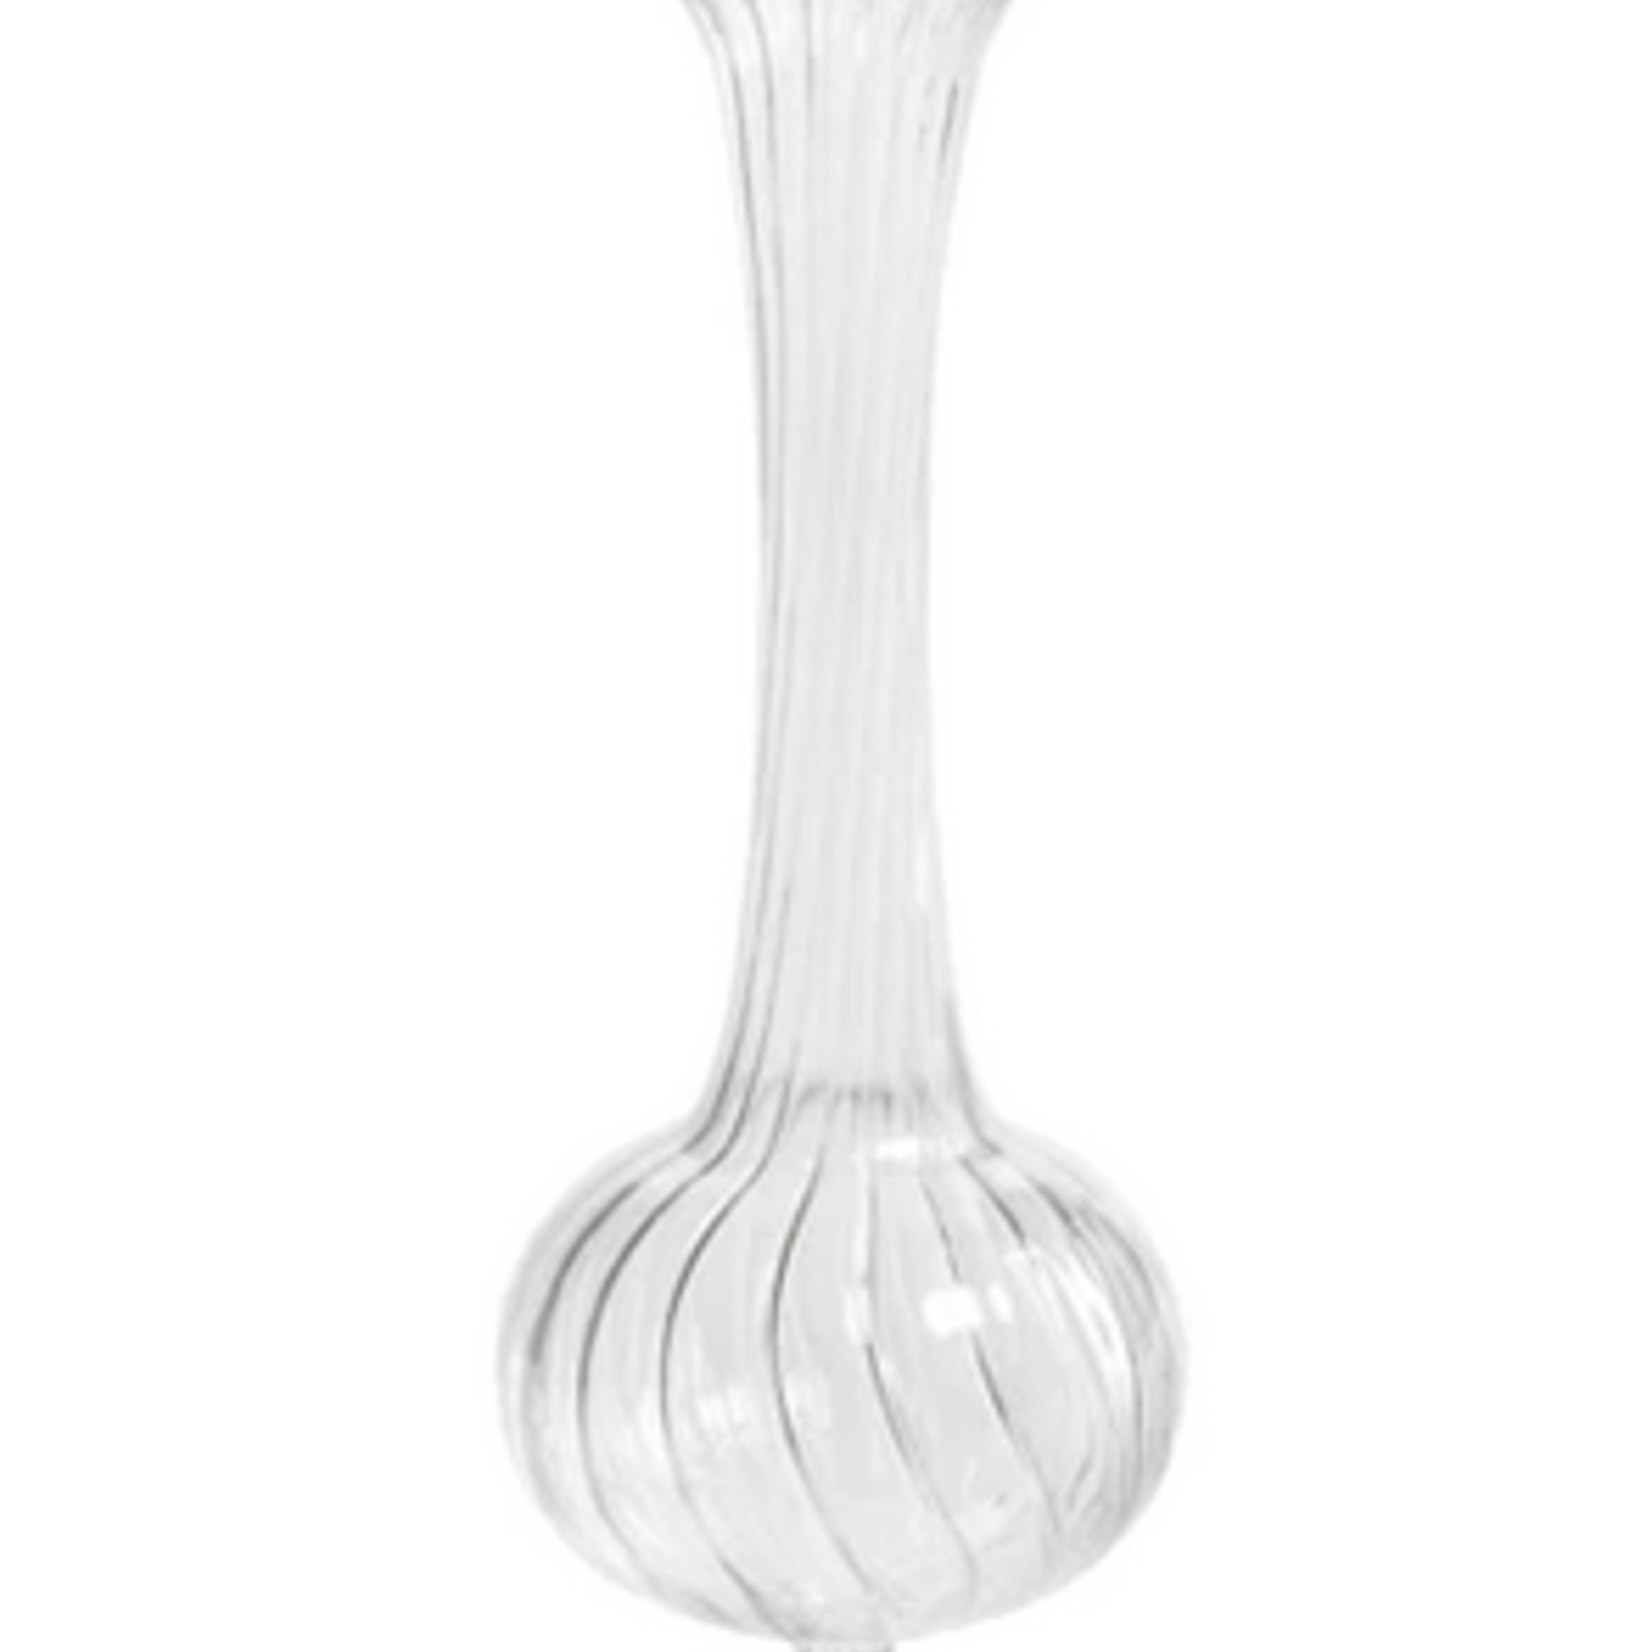 Zodax Bagatelle Optic Vase